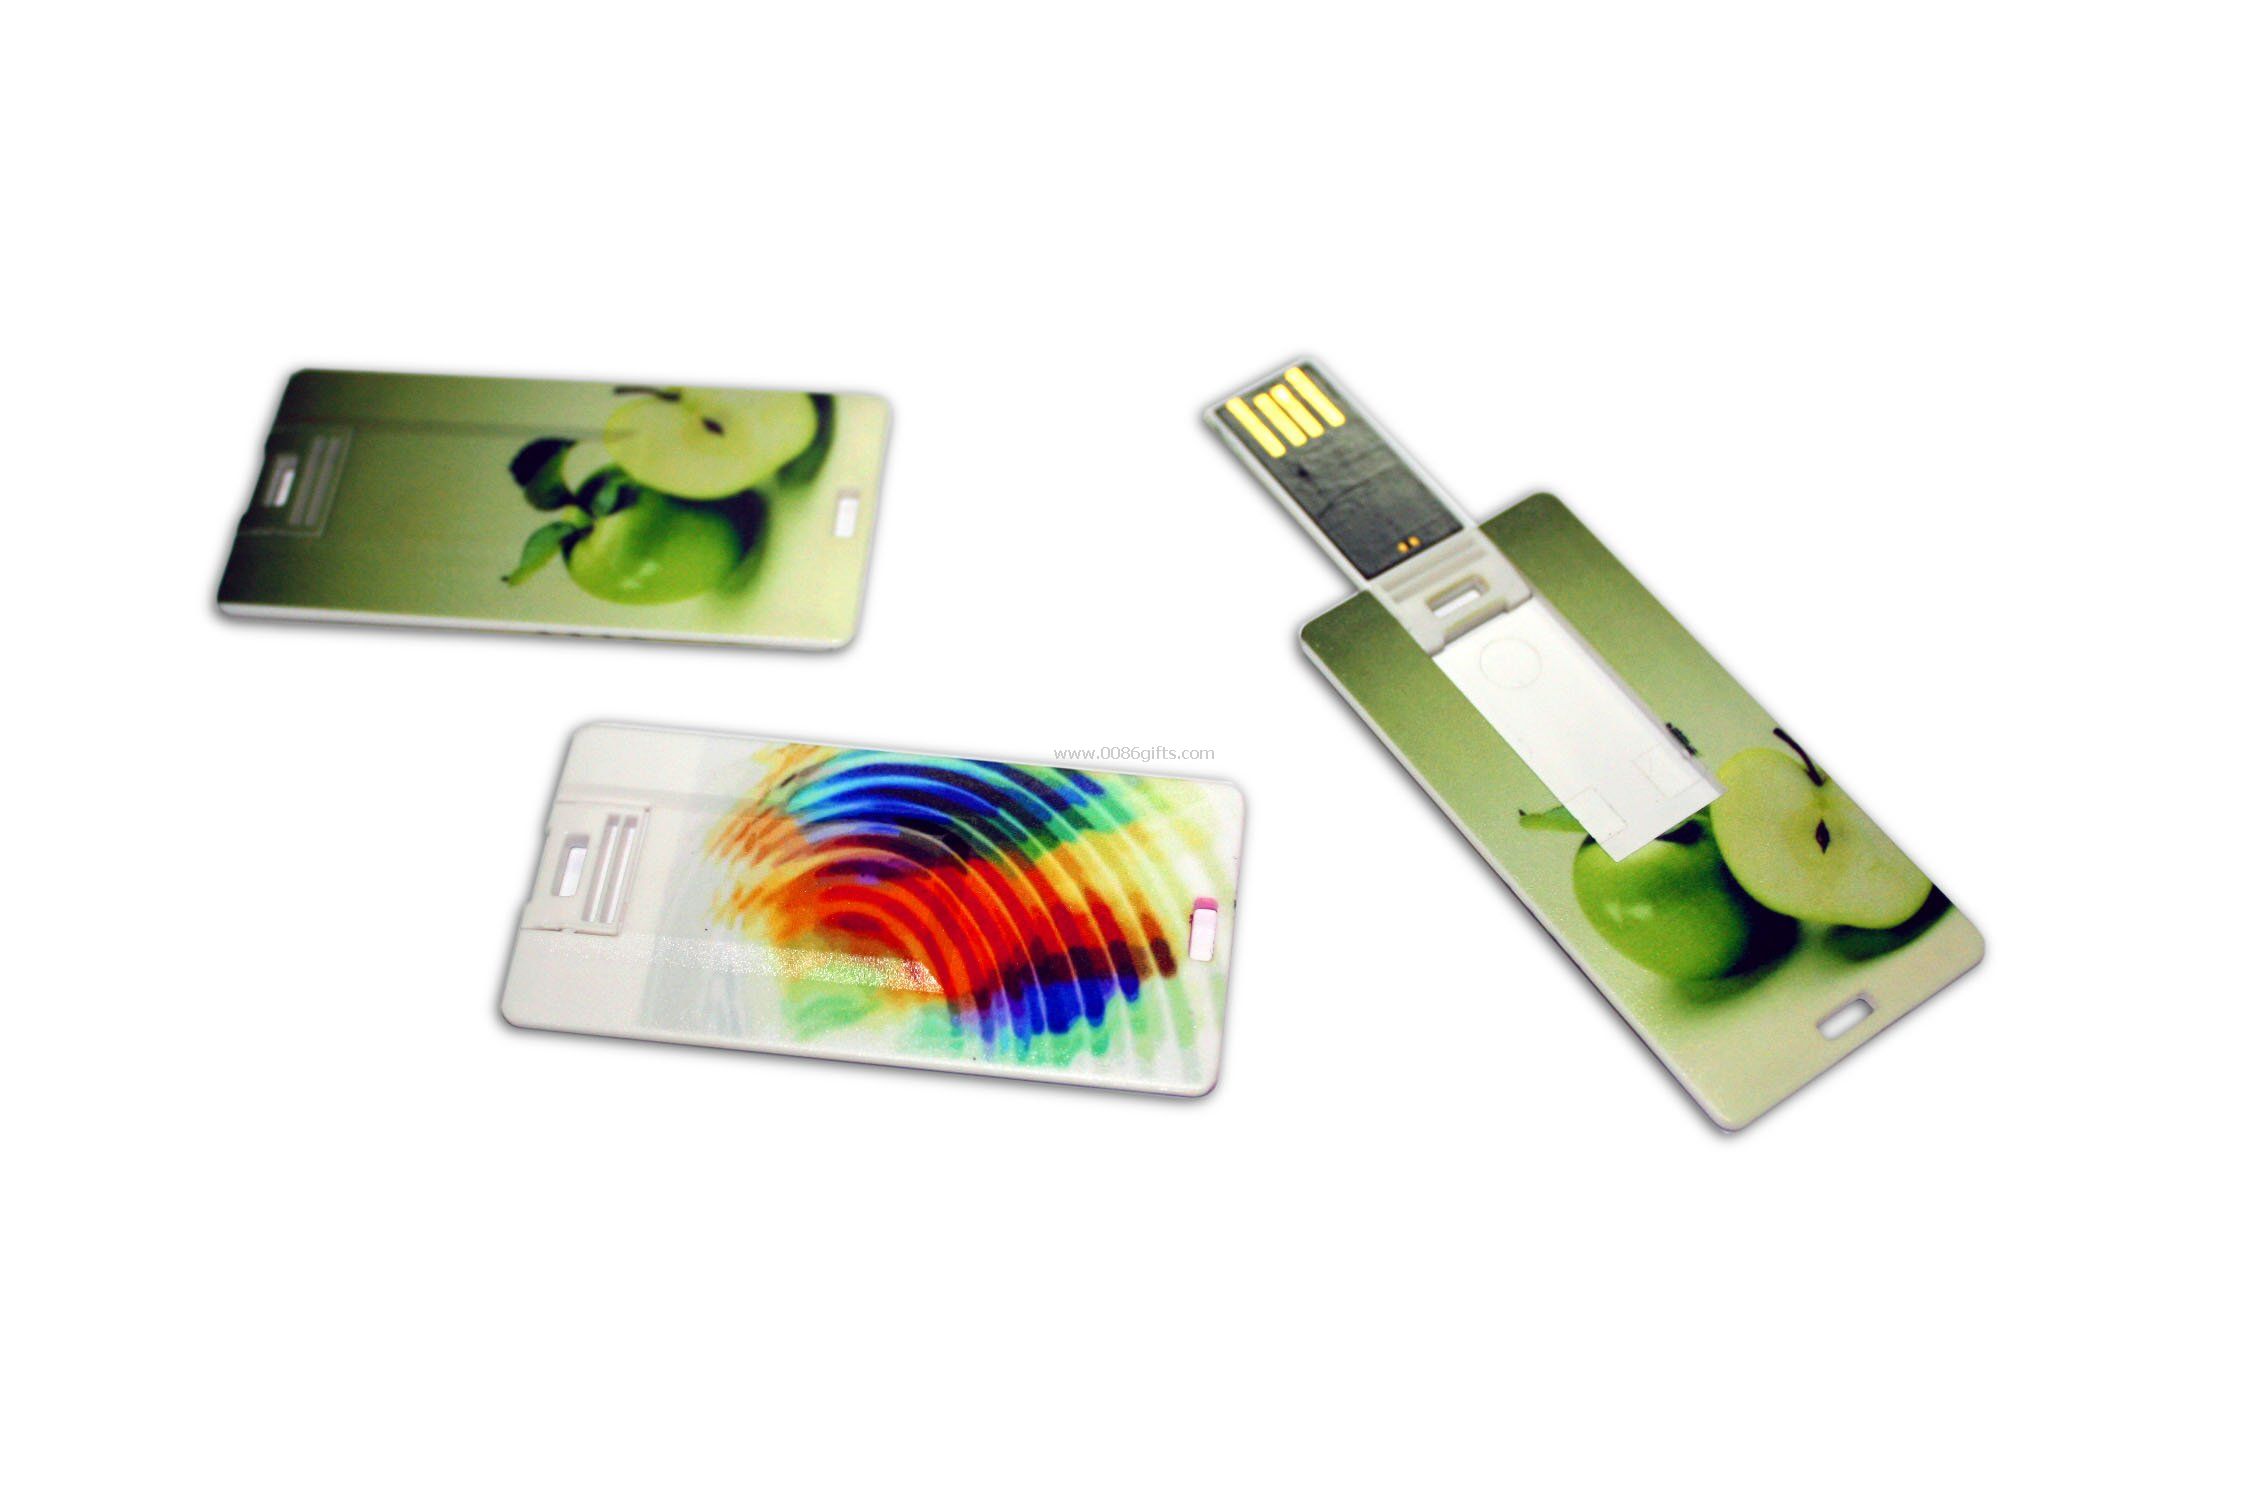 1G Credit Card USB Drives logo printed